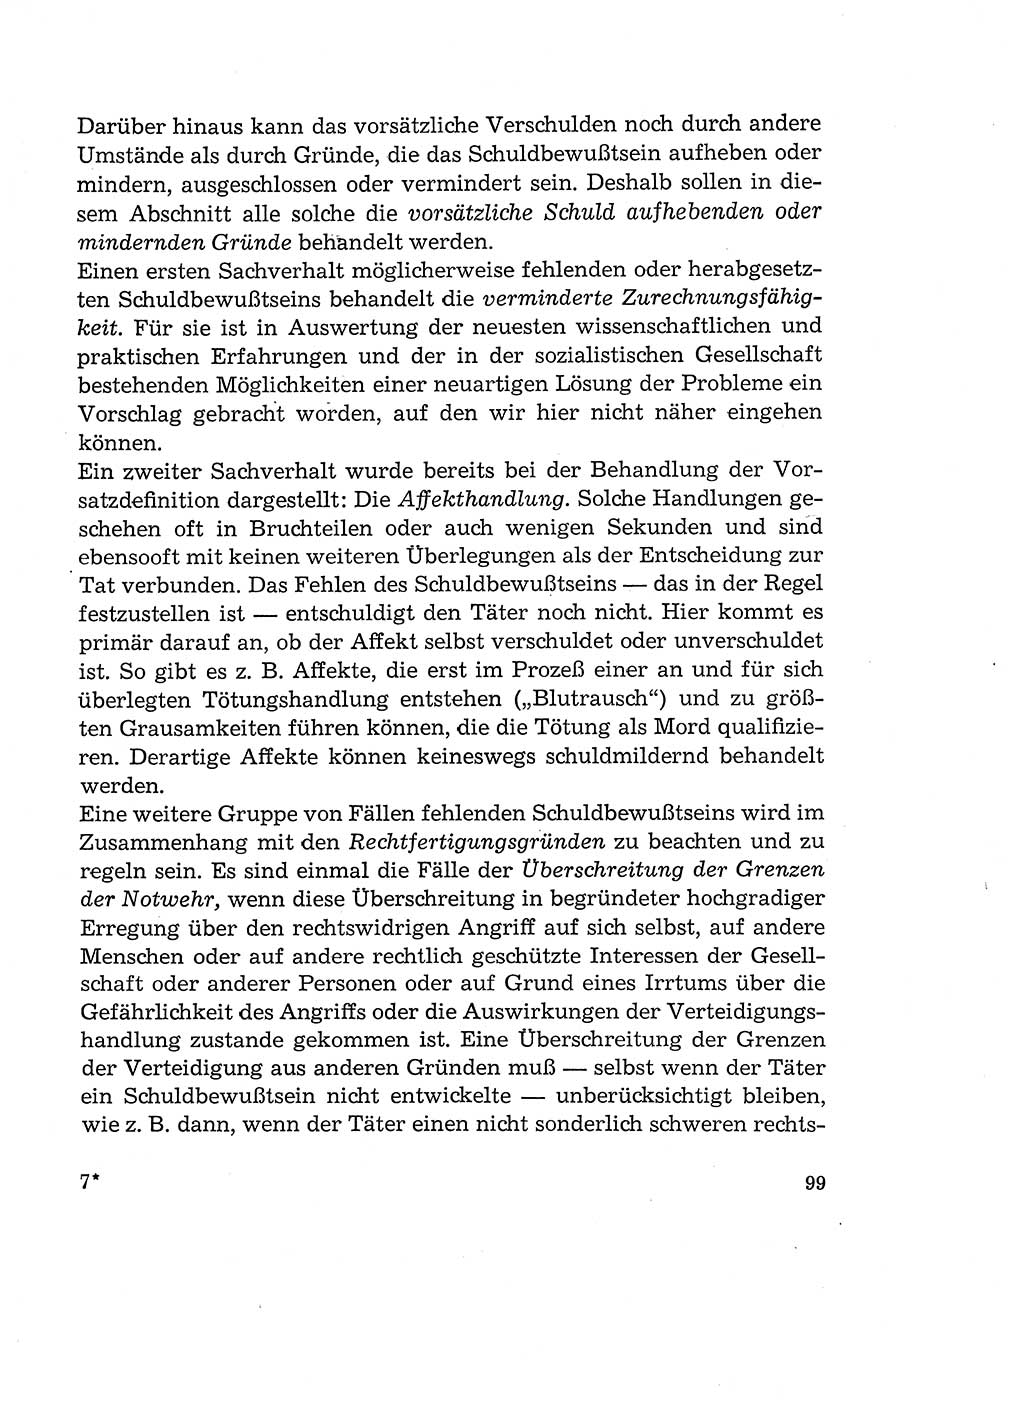 Verantwortung und Schuld im neuen Strafgesetzbuch (StGB) [Deutsche Demokratische Republik (DDR)] 1964, Seite 99 (Verantw. Sch. StGB DDR 1964, S. 99)